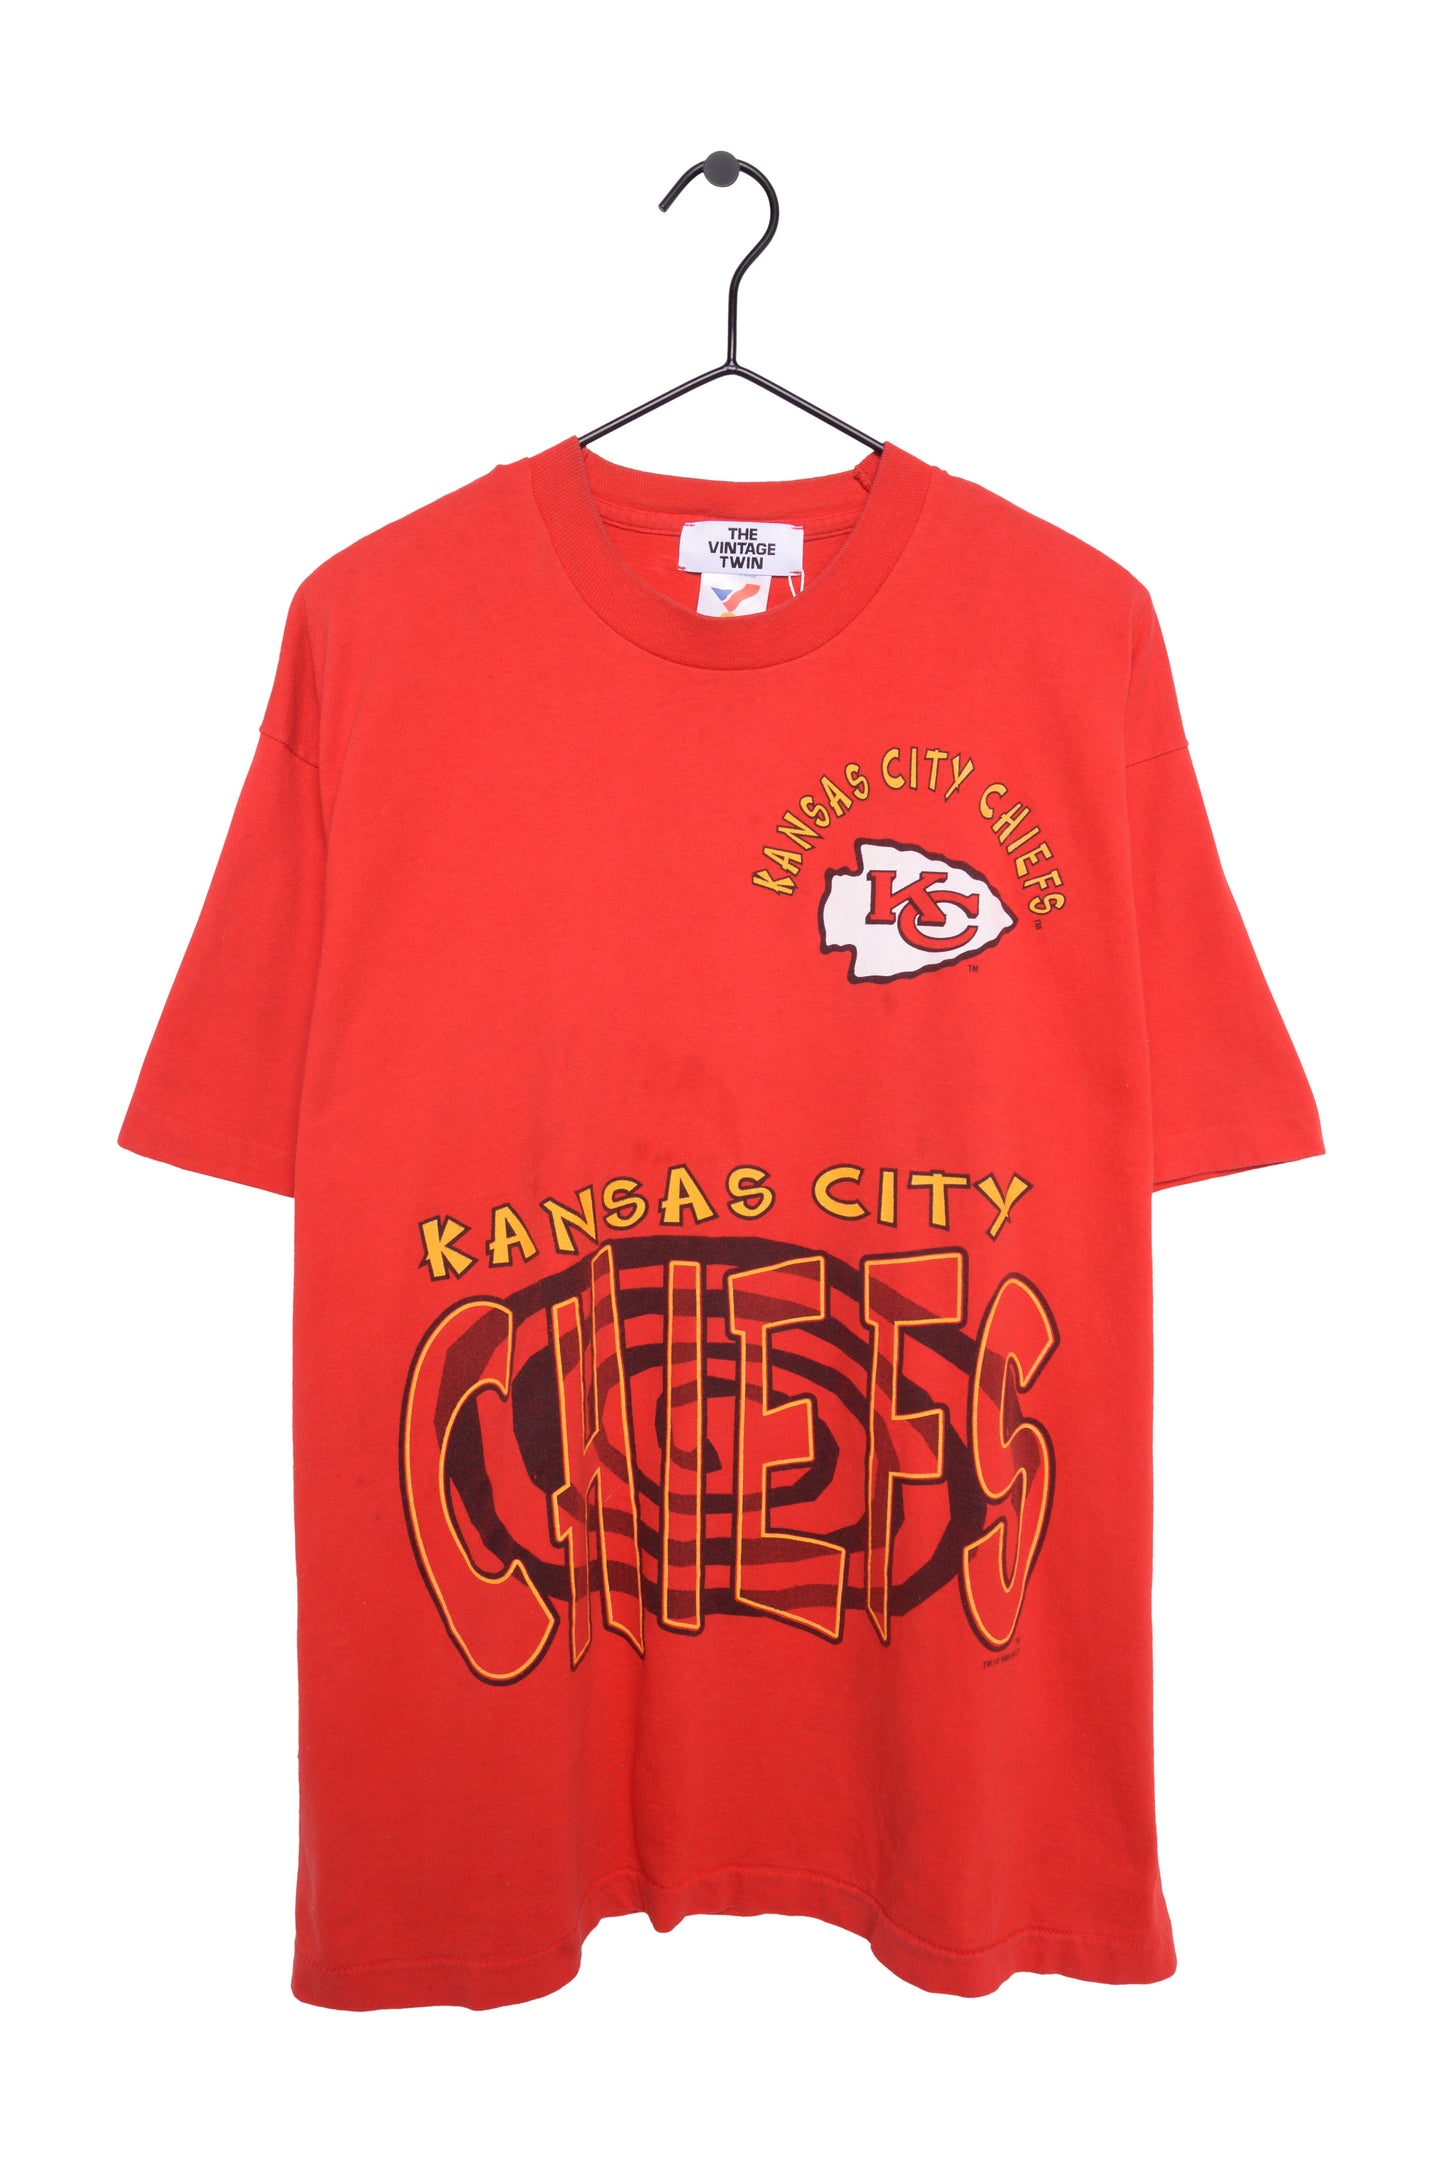 1995 Kansas City Chiefs Tee USA